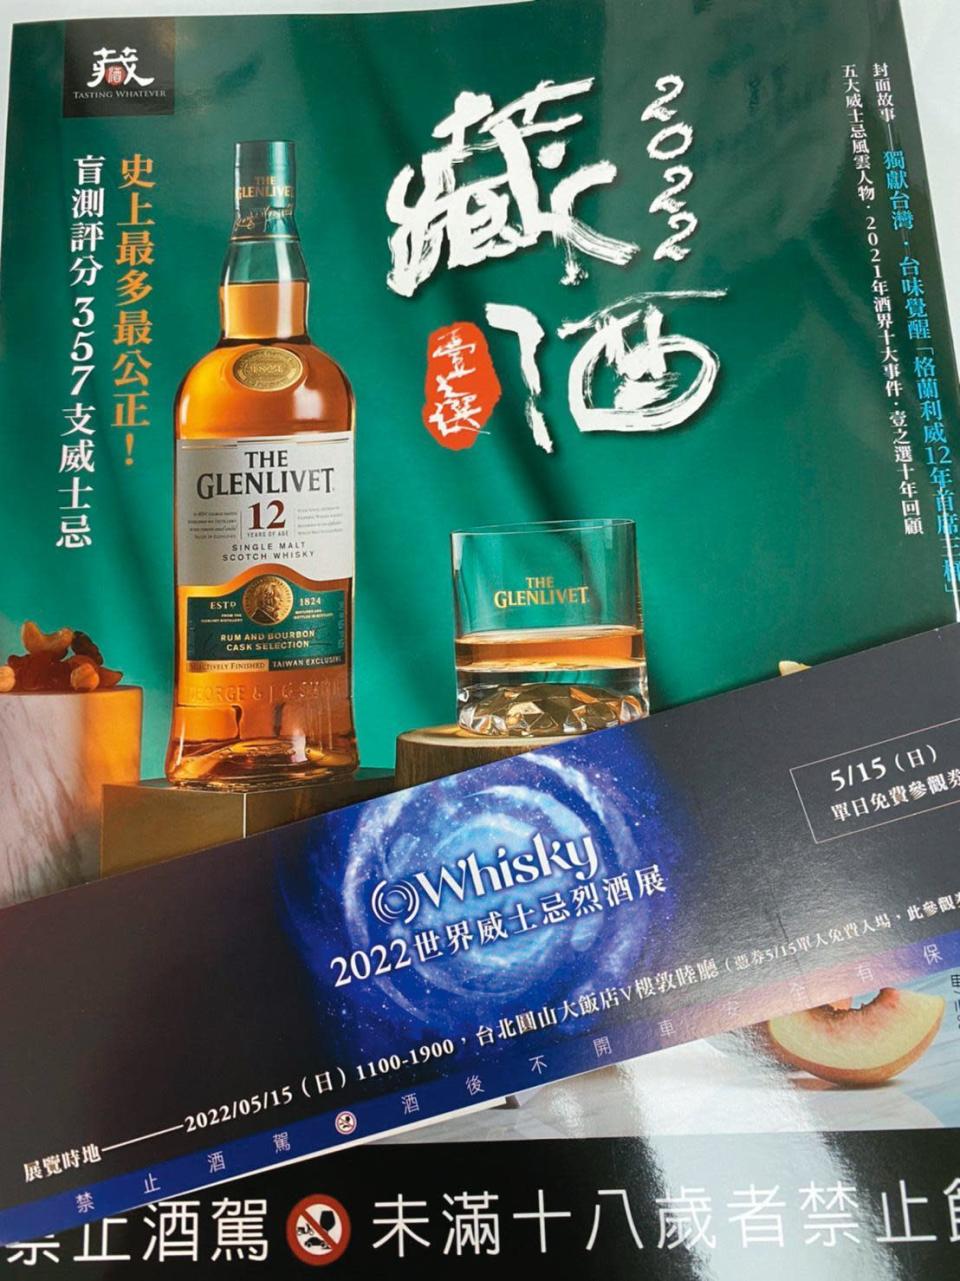 在7-ELEVEn或是博客來買到的《2022藏酒壹之選》，書腰的O Whisky宣傳單可以作為7月31日的單日免費酒展參觀券（原為5月15日，因順延視同有效）。